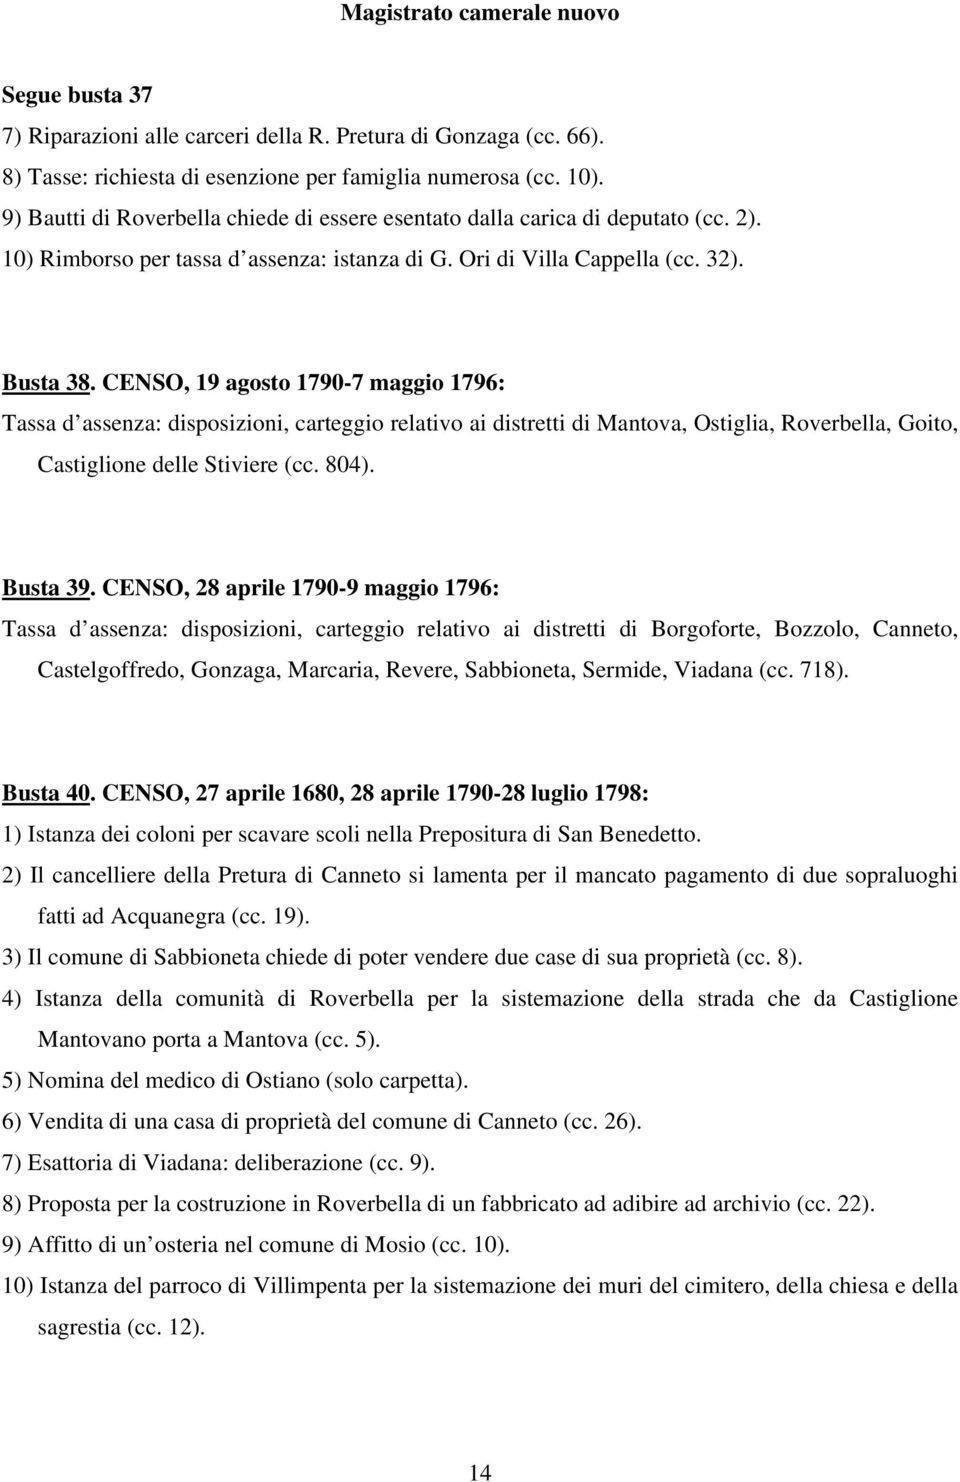 CENSO, 19 agosto 1790-7 maggio 1796: Tassa d assenza: disposizioni, carteggio relativo ai distretti di Mantova, Ostiglia, Roverbella, Goito, Castiglione delle Stiviere (cc. 804). Busta 39.